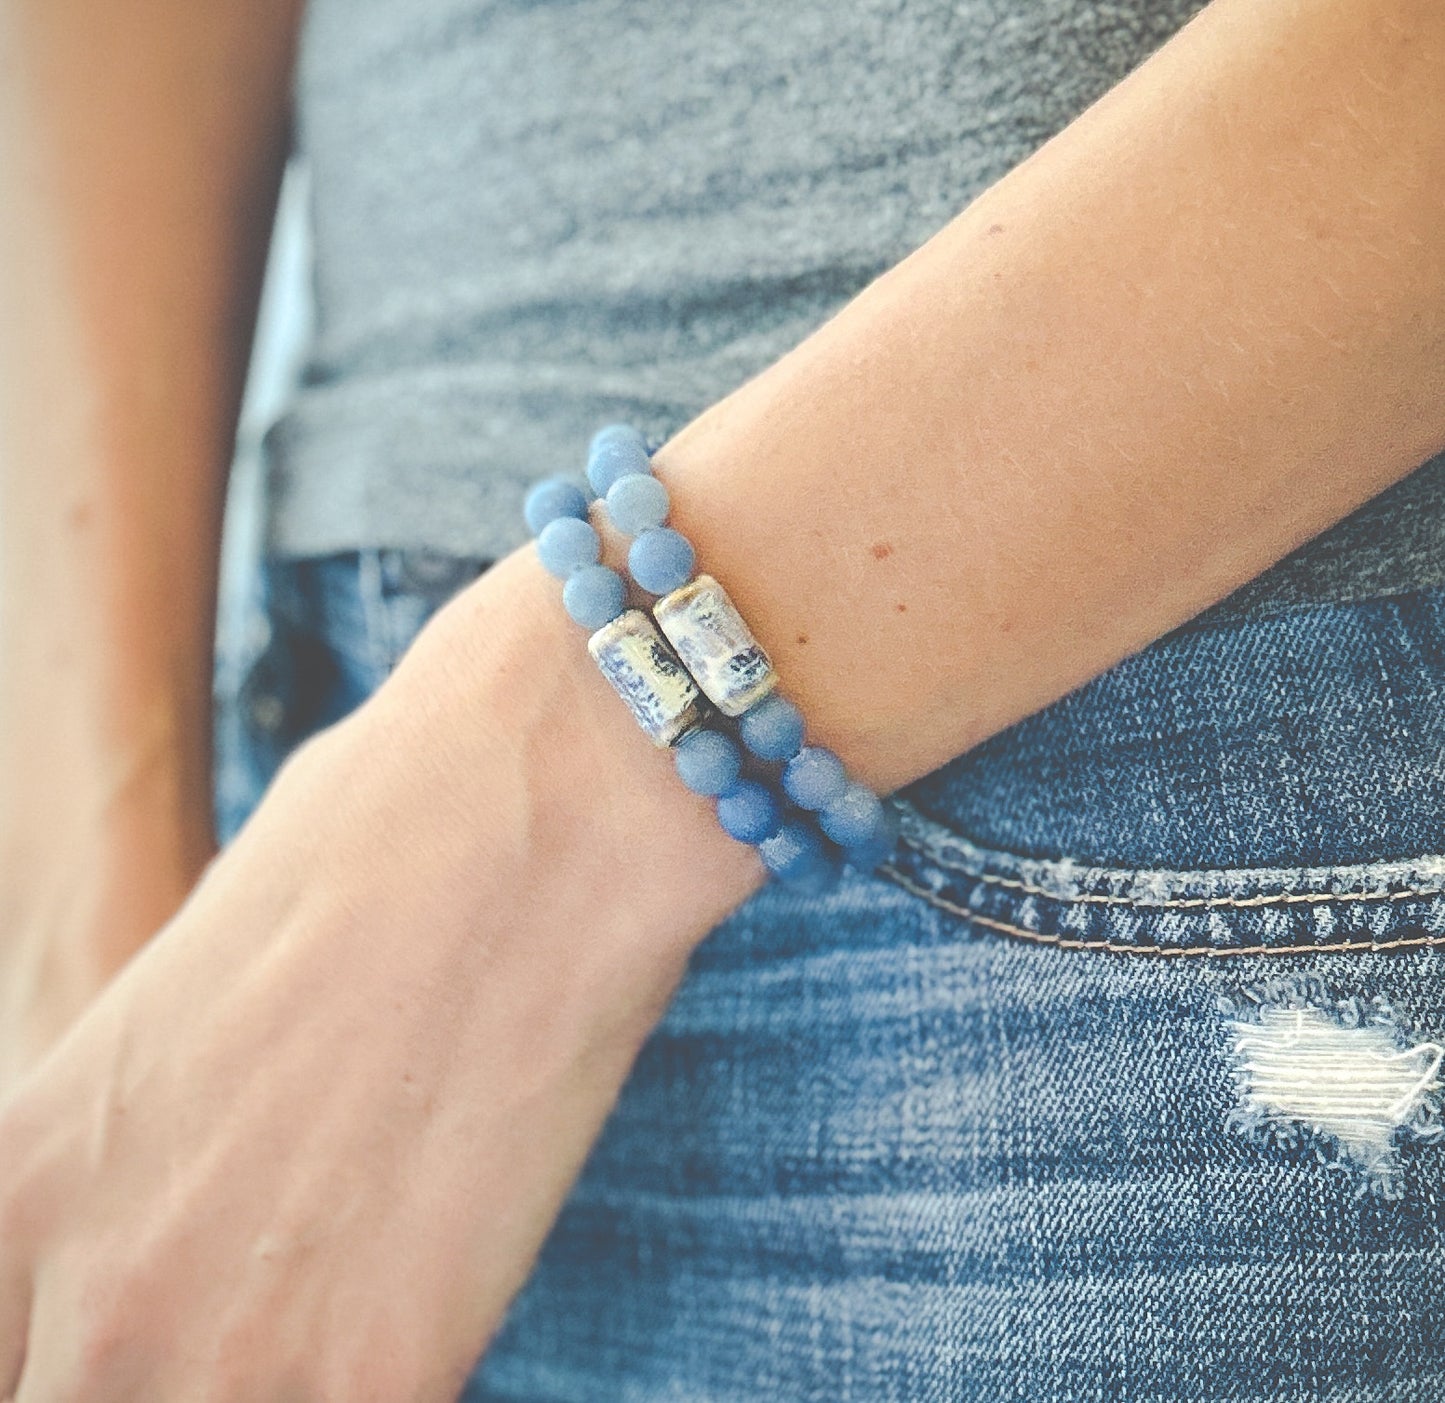 The Blue Jean Baby Bracelet